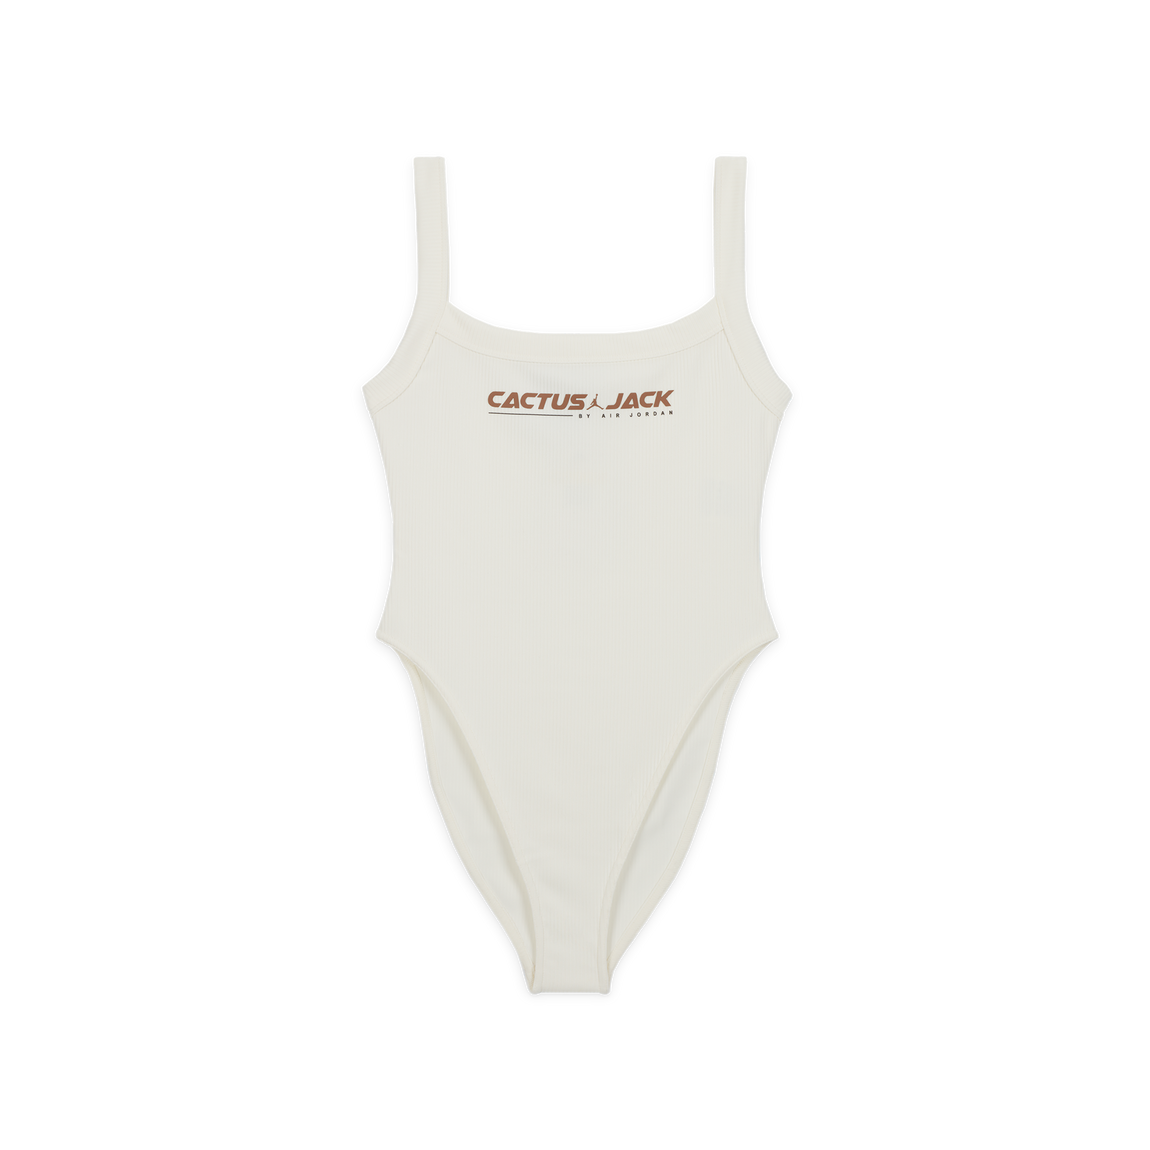 Jordan X Travis Scott Women's Bodysuit (Sail/Archaeo Brown) - Jordan X Travis Scott Women's Bodysuit (Sail/Archaeo Brown) - 